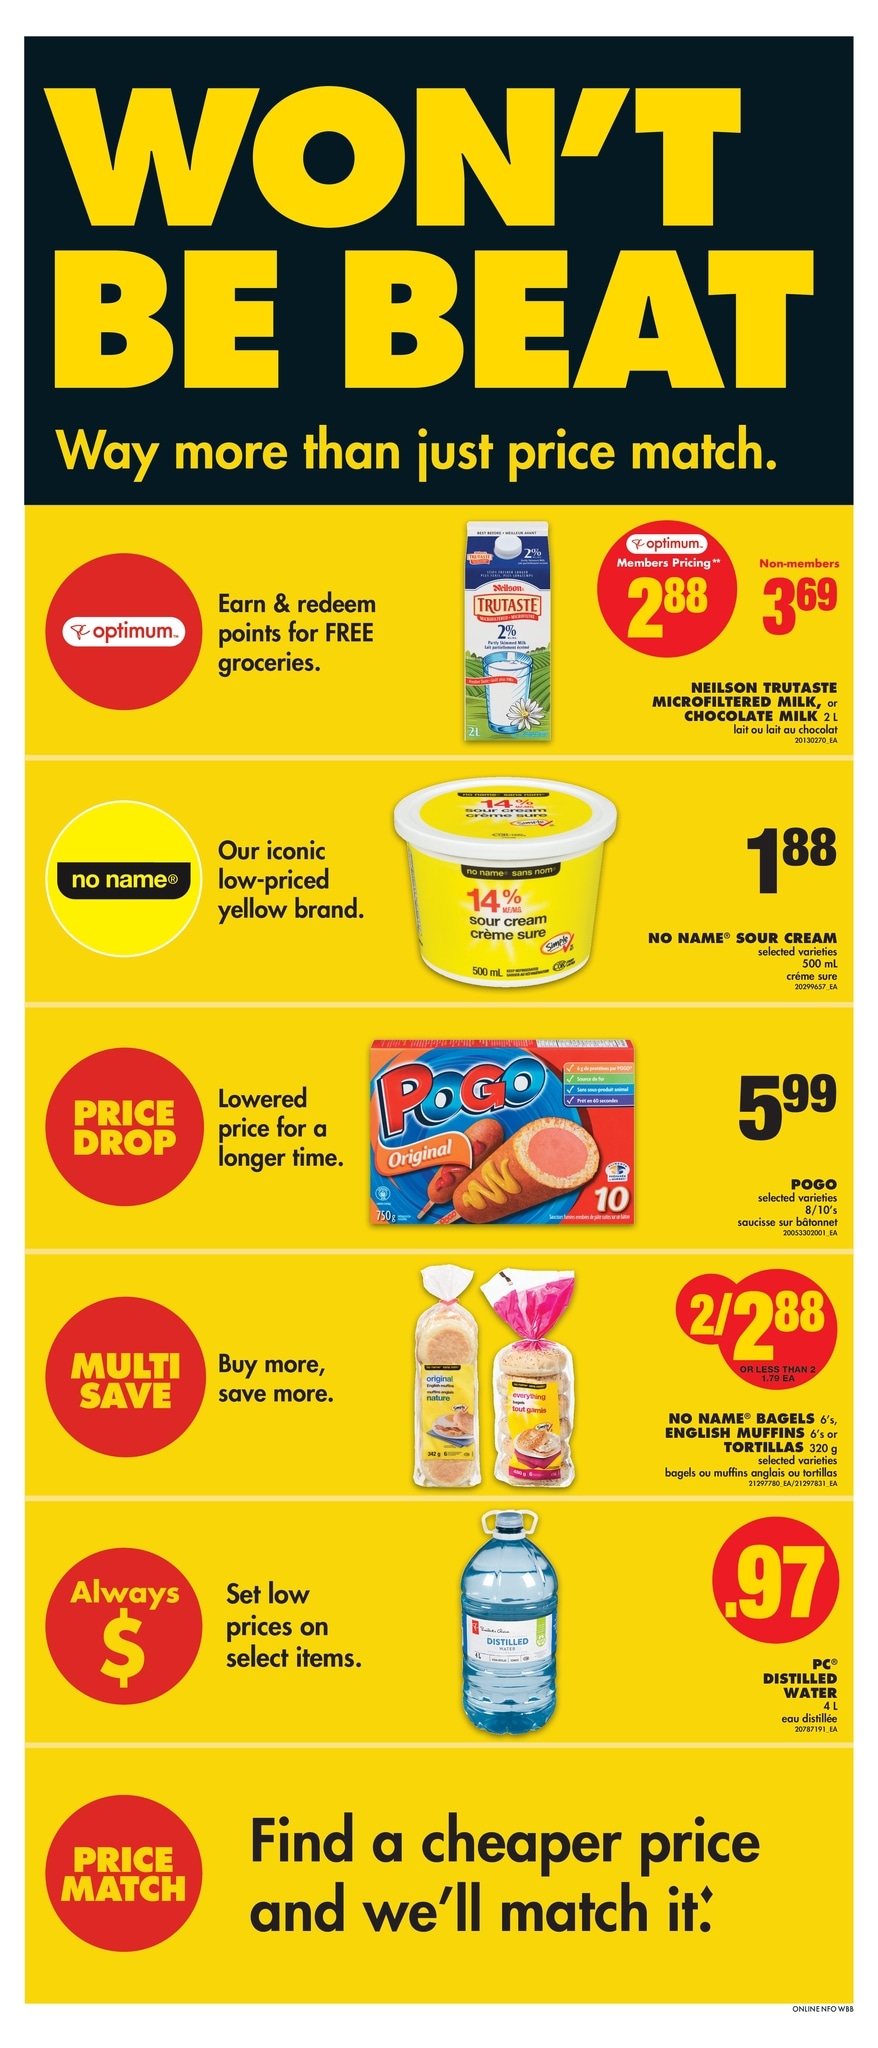 No Frills Ontario - Weekly Flyer Specials - Page 2